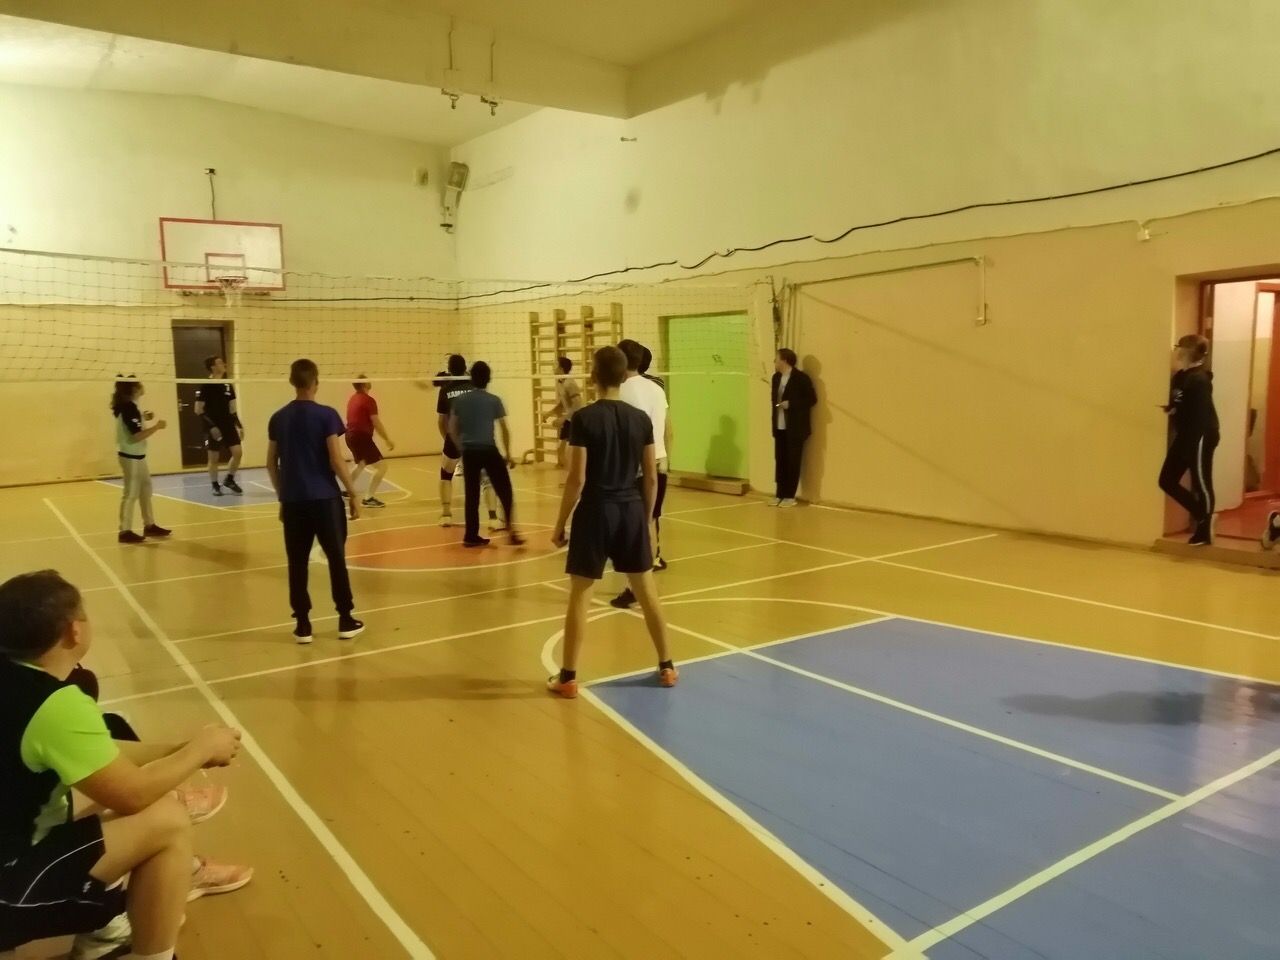 Любители волейбола Агрызского района по-своему отпраздновали День Республики Татарстан